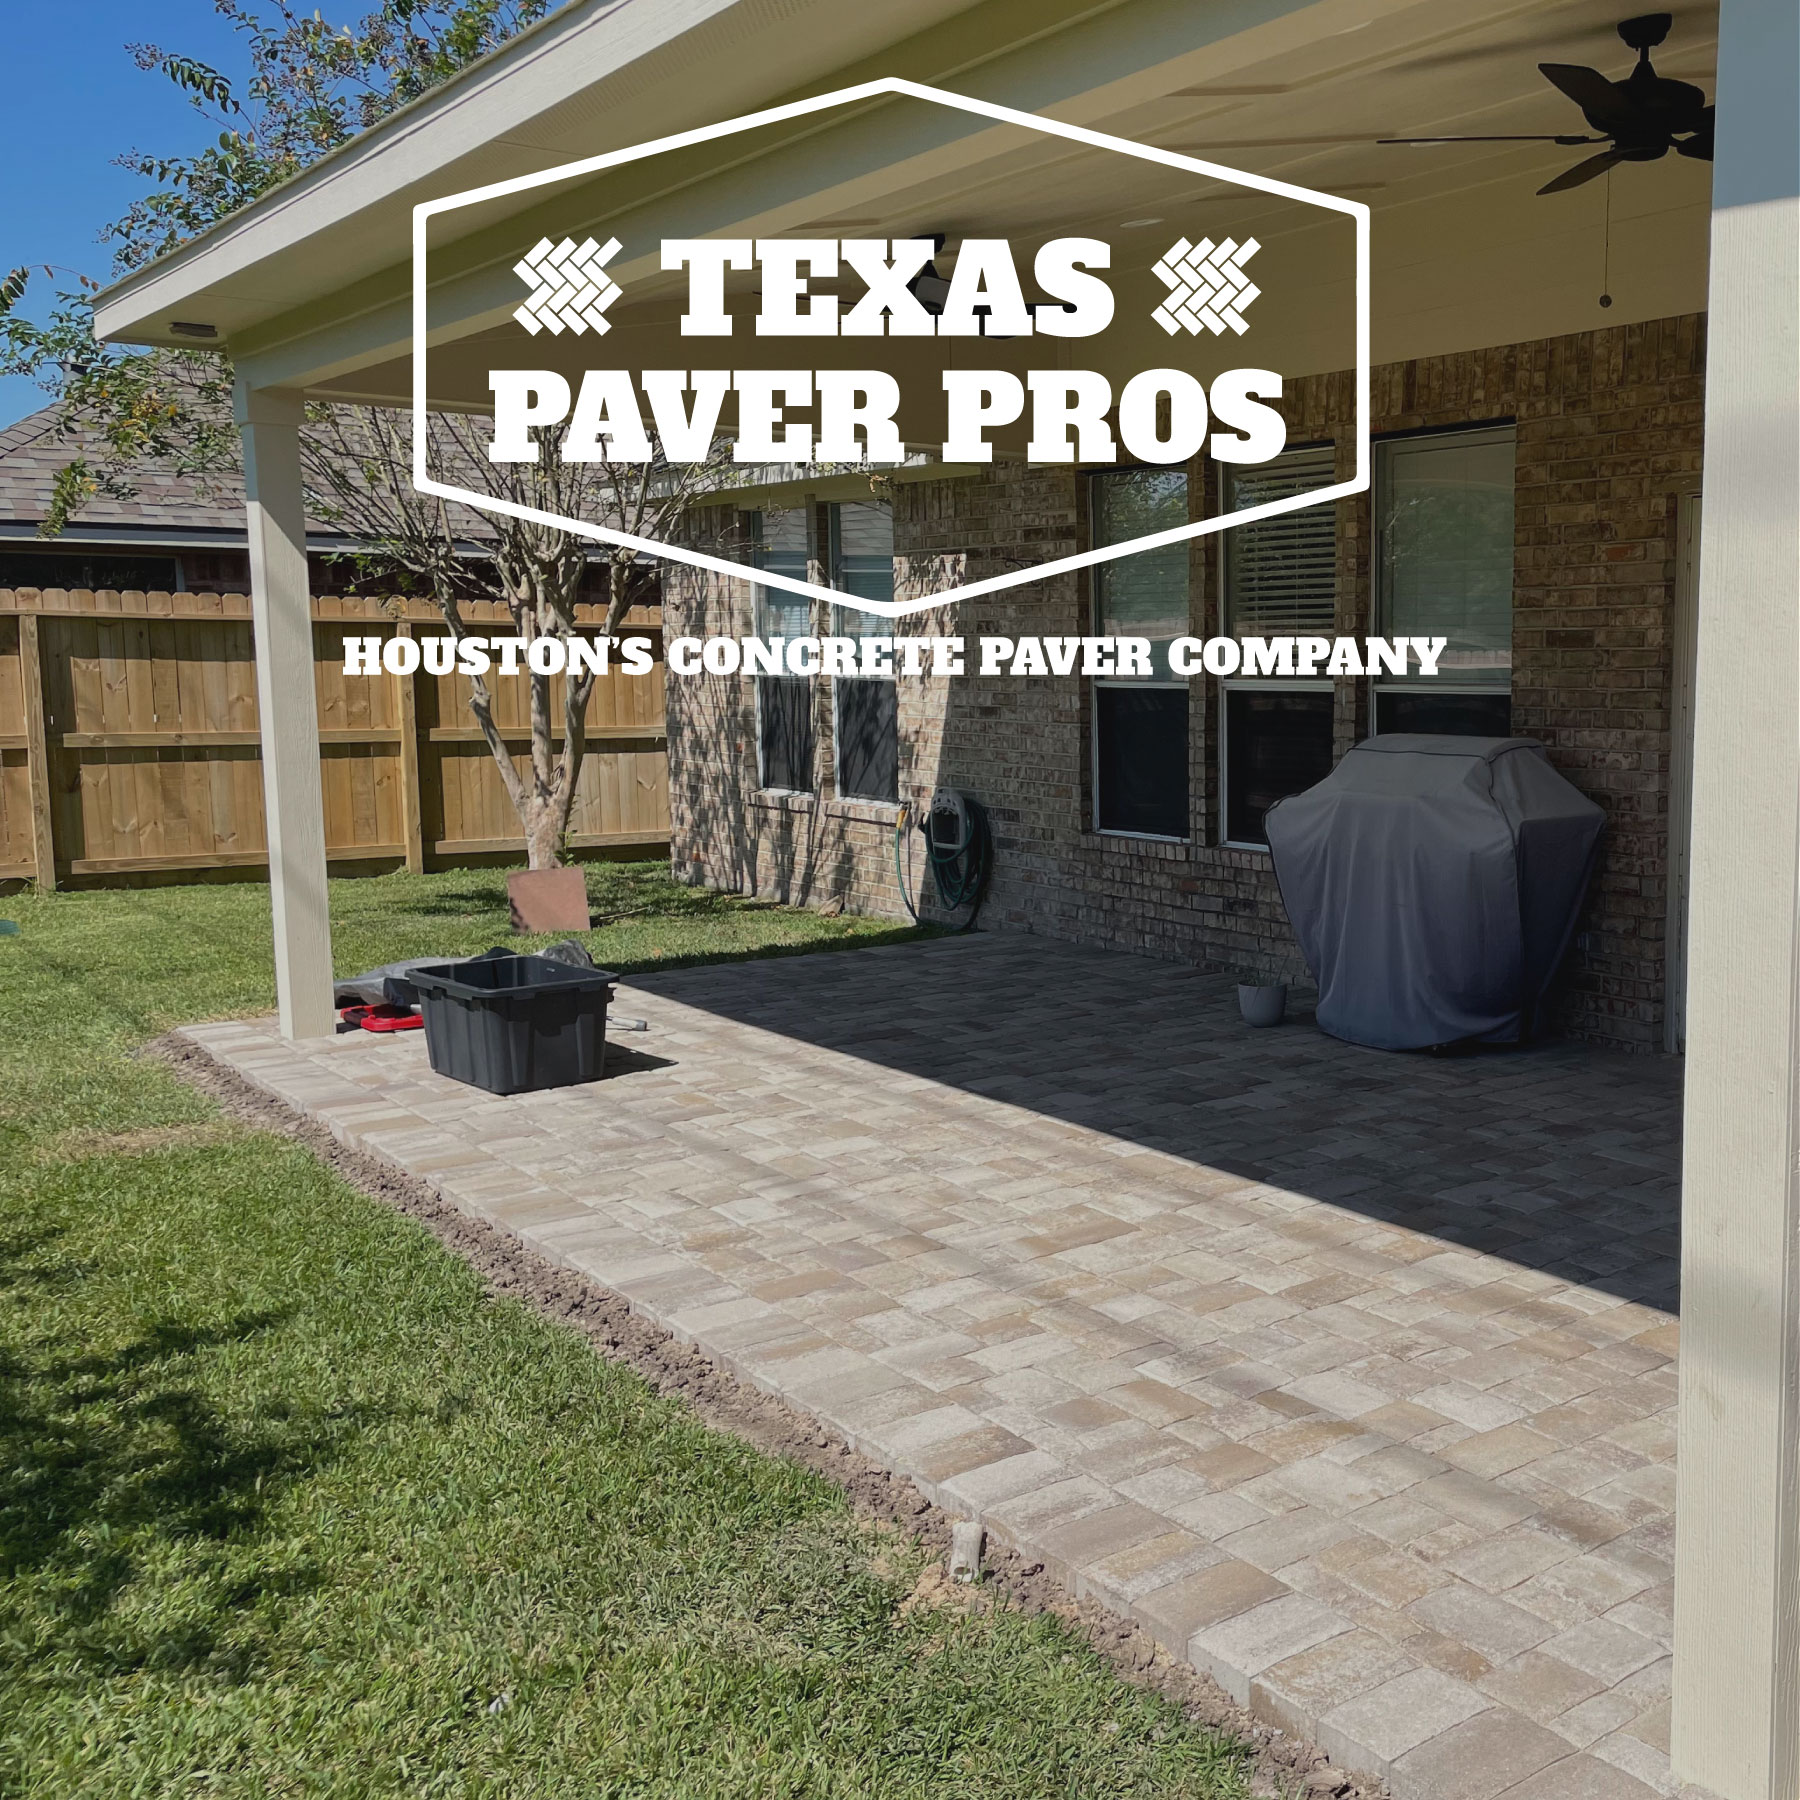 (c) Texas-paver-pros.com